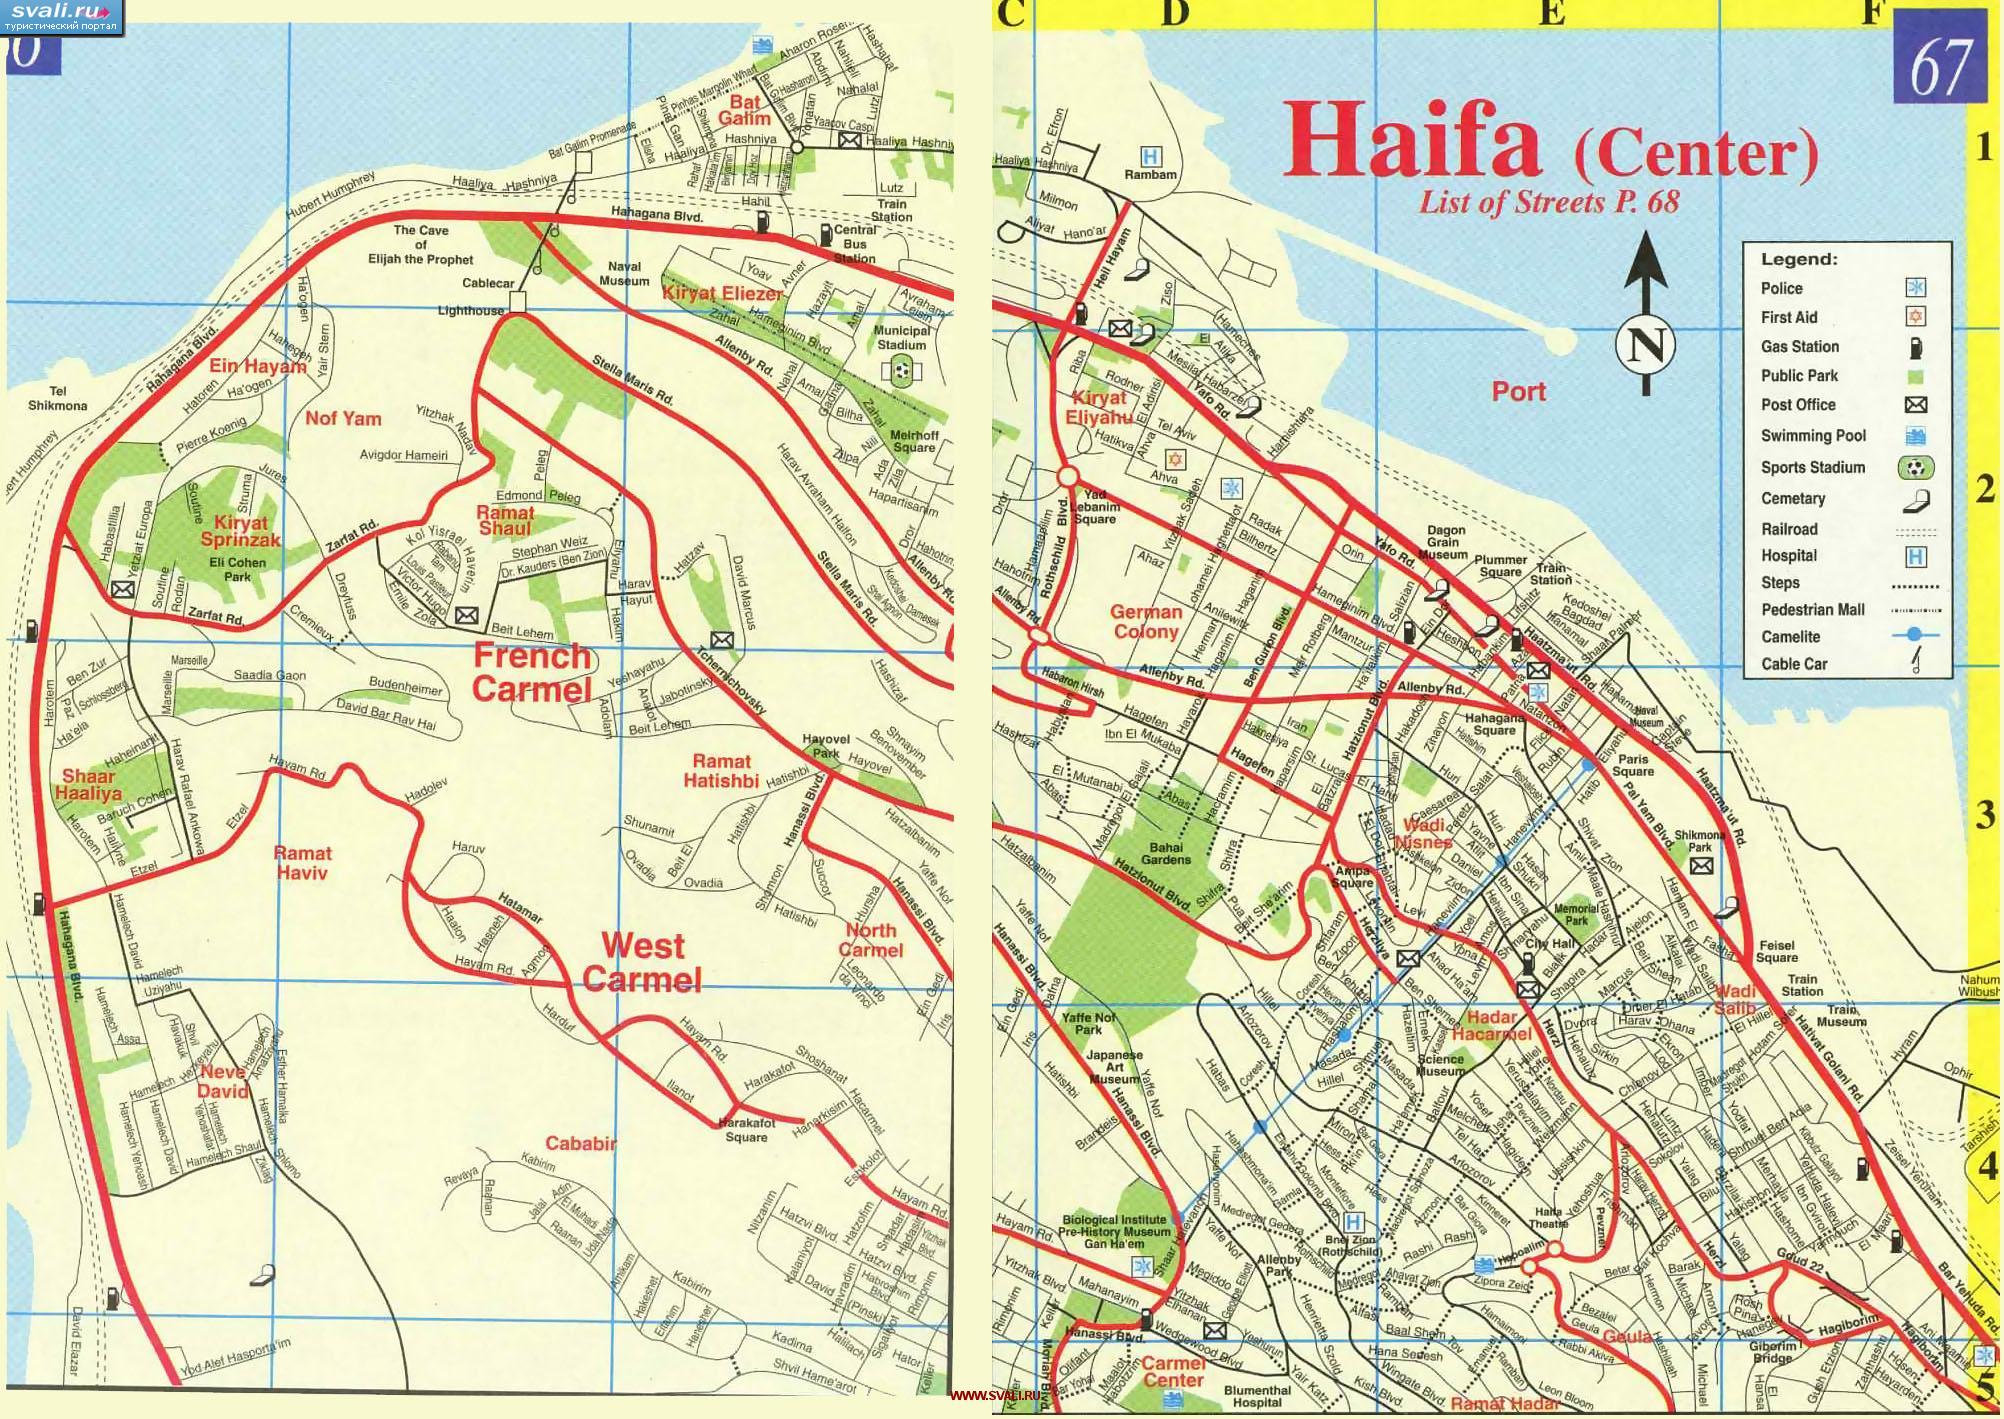   (Haifa),  (.)